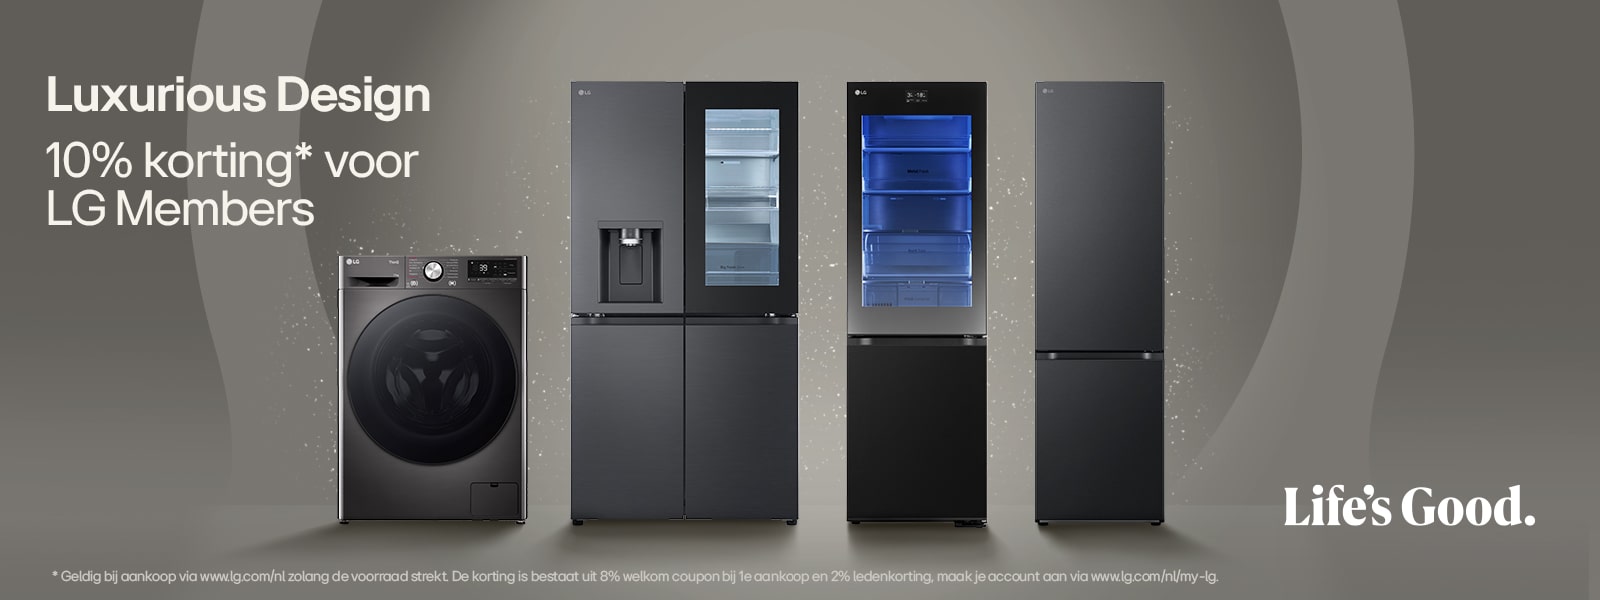 Een wasmachine, koel-vries combinatie en een amerikaanse koelkast staan op een ronde verhoging. Rondom de producten liggen blauwe ballen en erachter is een blauwe cirkel zichtbaar.